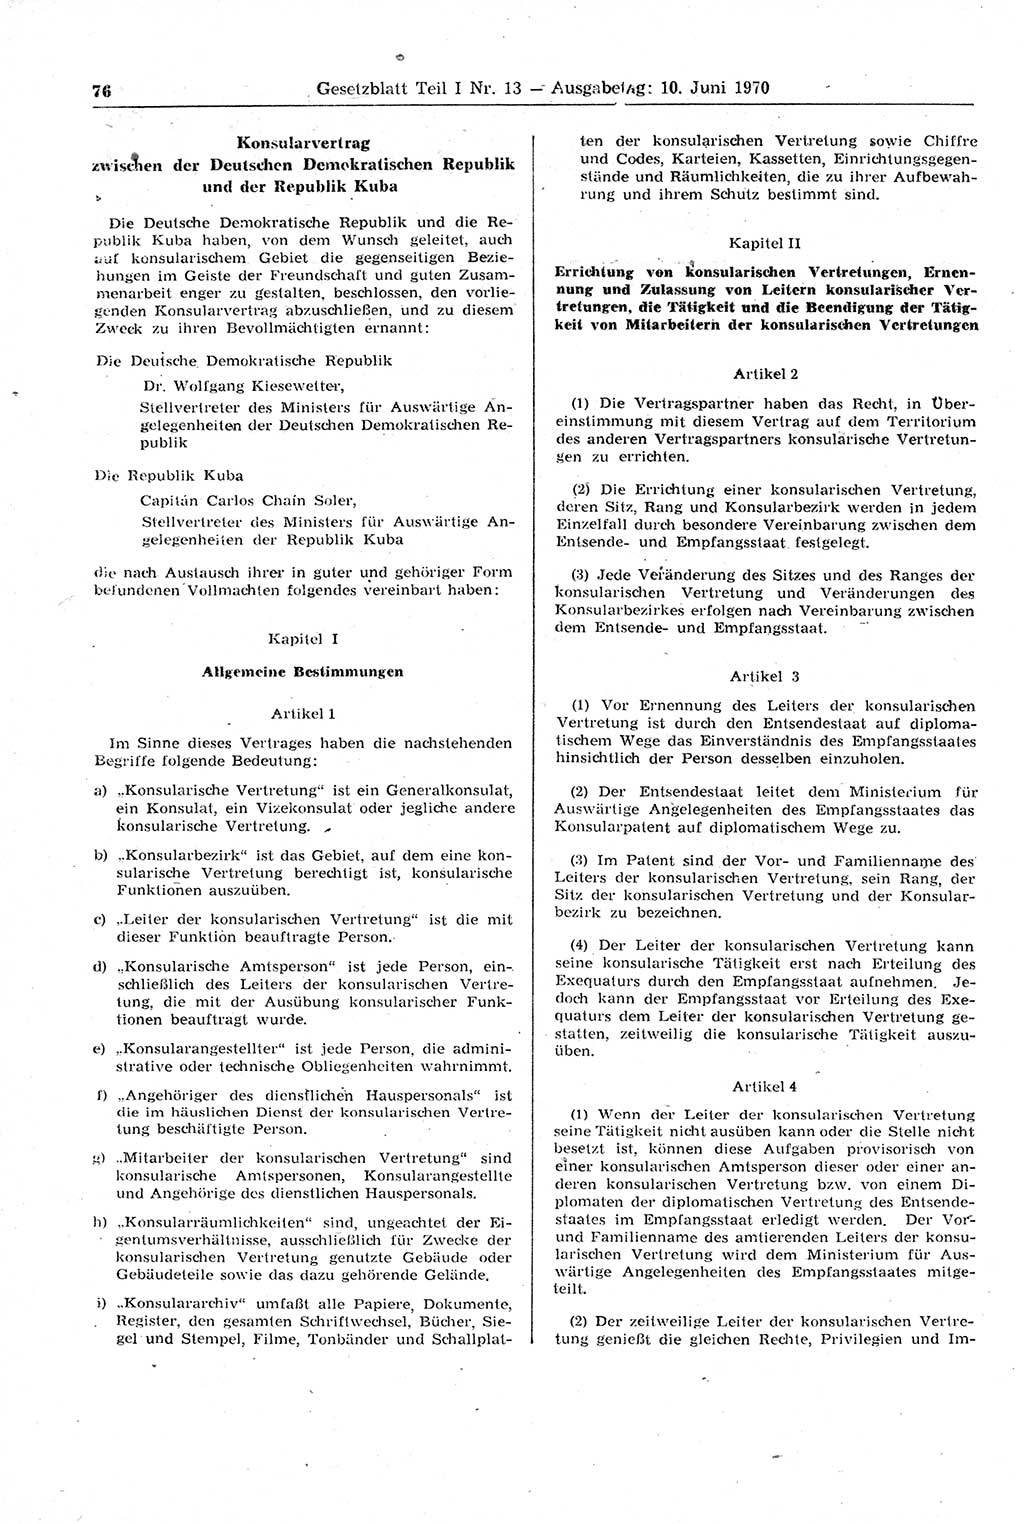 Gesetzblatt (GBl.) der Deutschen Demokratischen Republik (DDR) Teil Ⅰ 1970, Seite 76 (GBl. DDR Ⅰ 1970, S. 76)